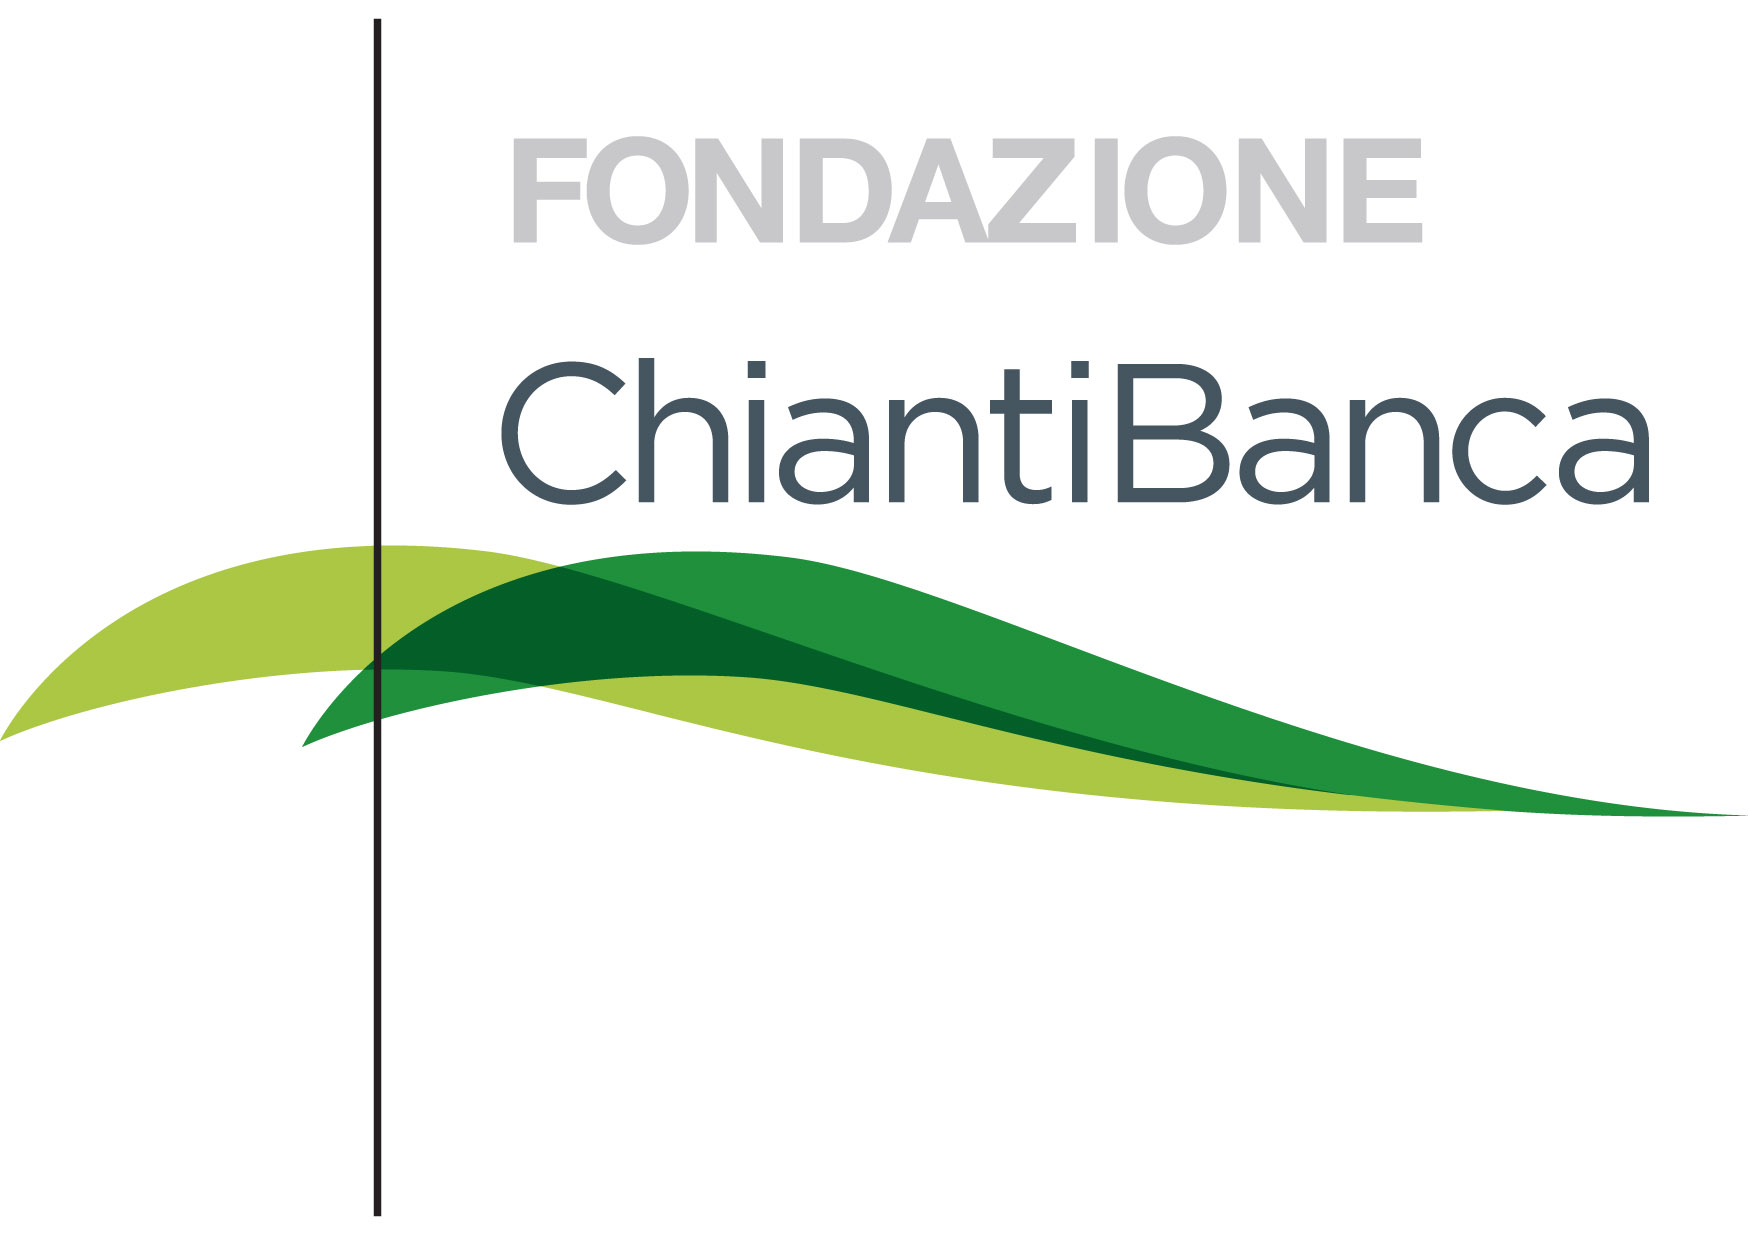 Chb_fondazione_logo_POSITIVO 2015